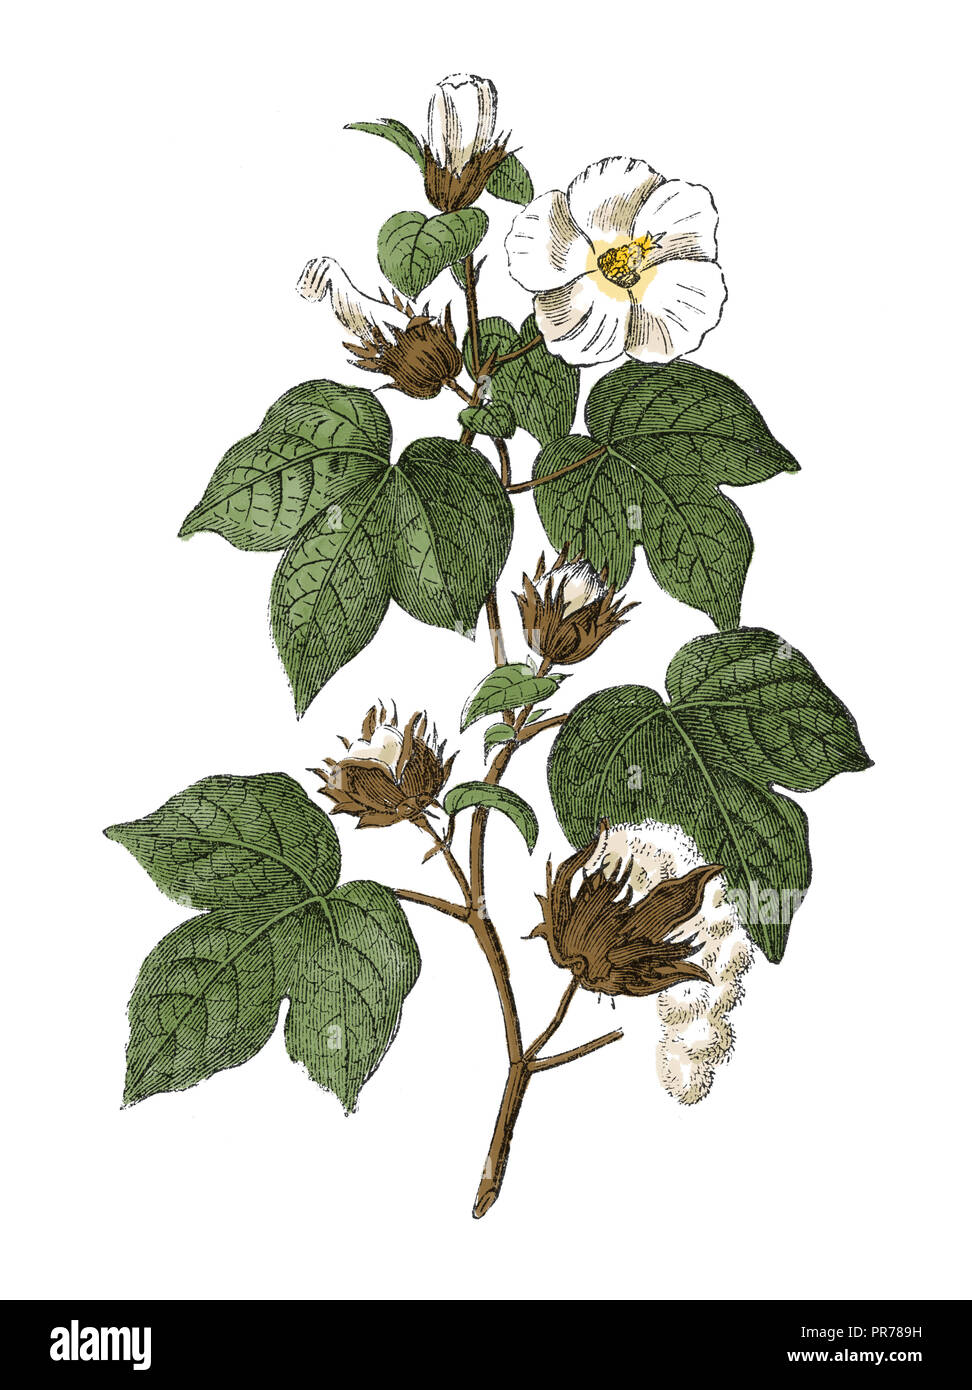 19 Abbildung: Gossypium hirsutum, auch als mexikanische Hochland Baumwolle oder Baumwolle bekannt. In systematischer Bilder-Atlas zum Conversat veröffentlicht. Stockfoto